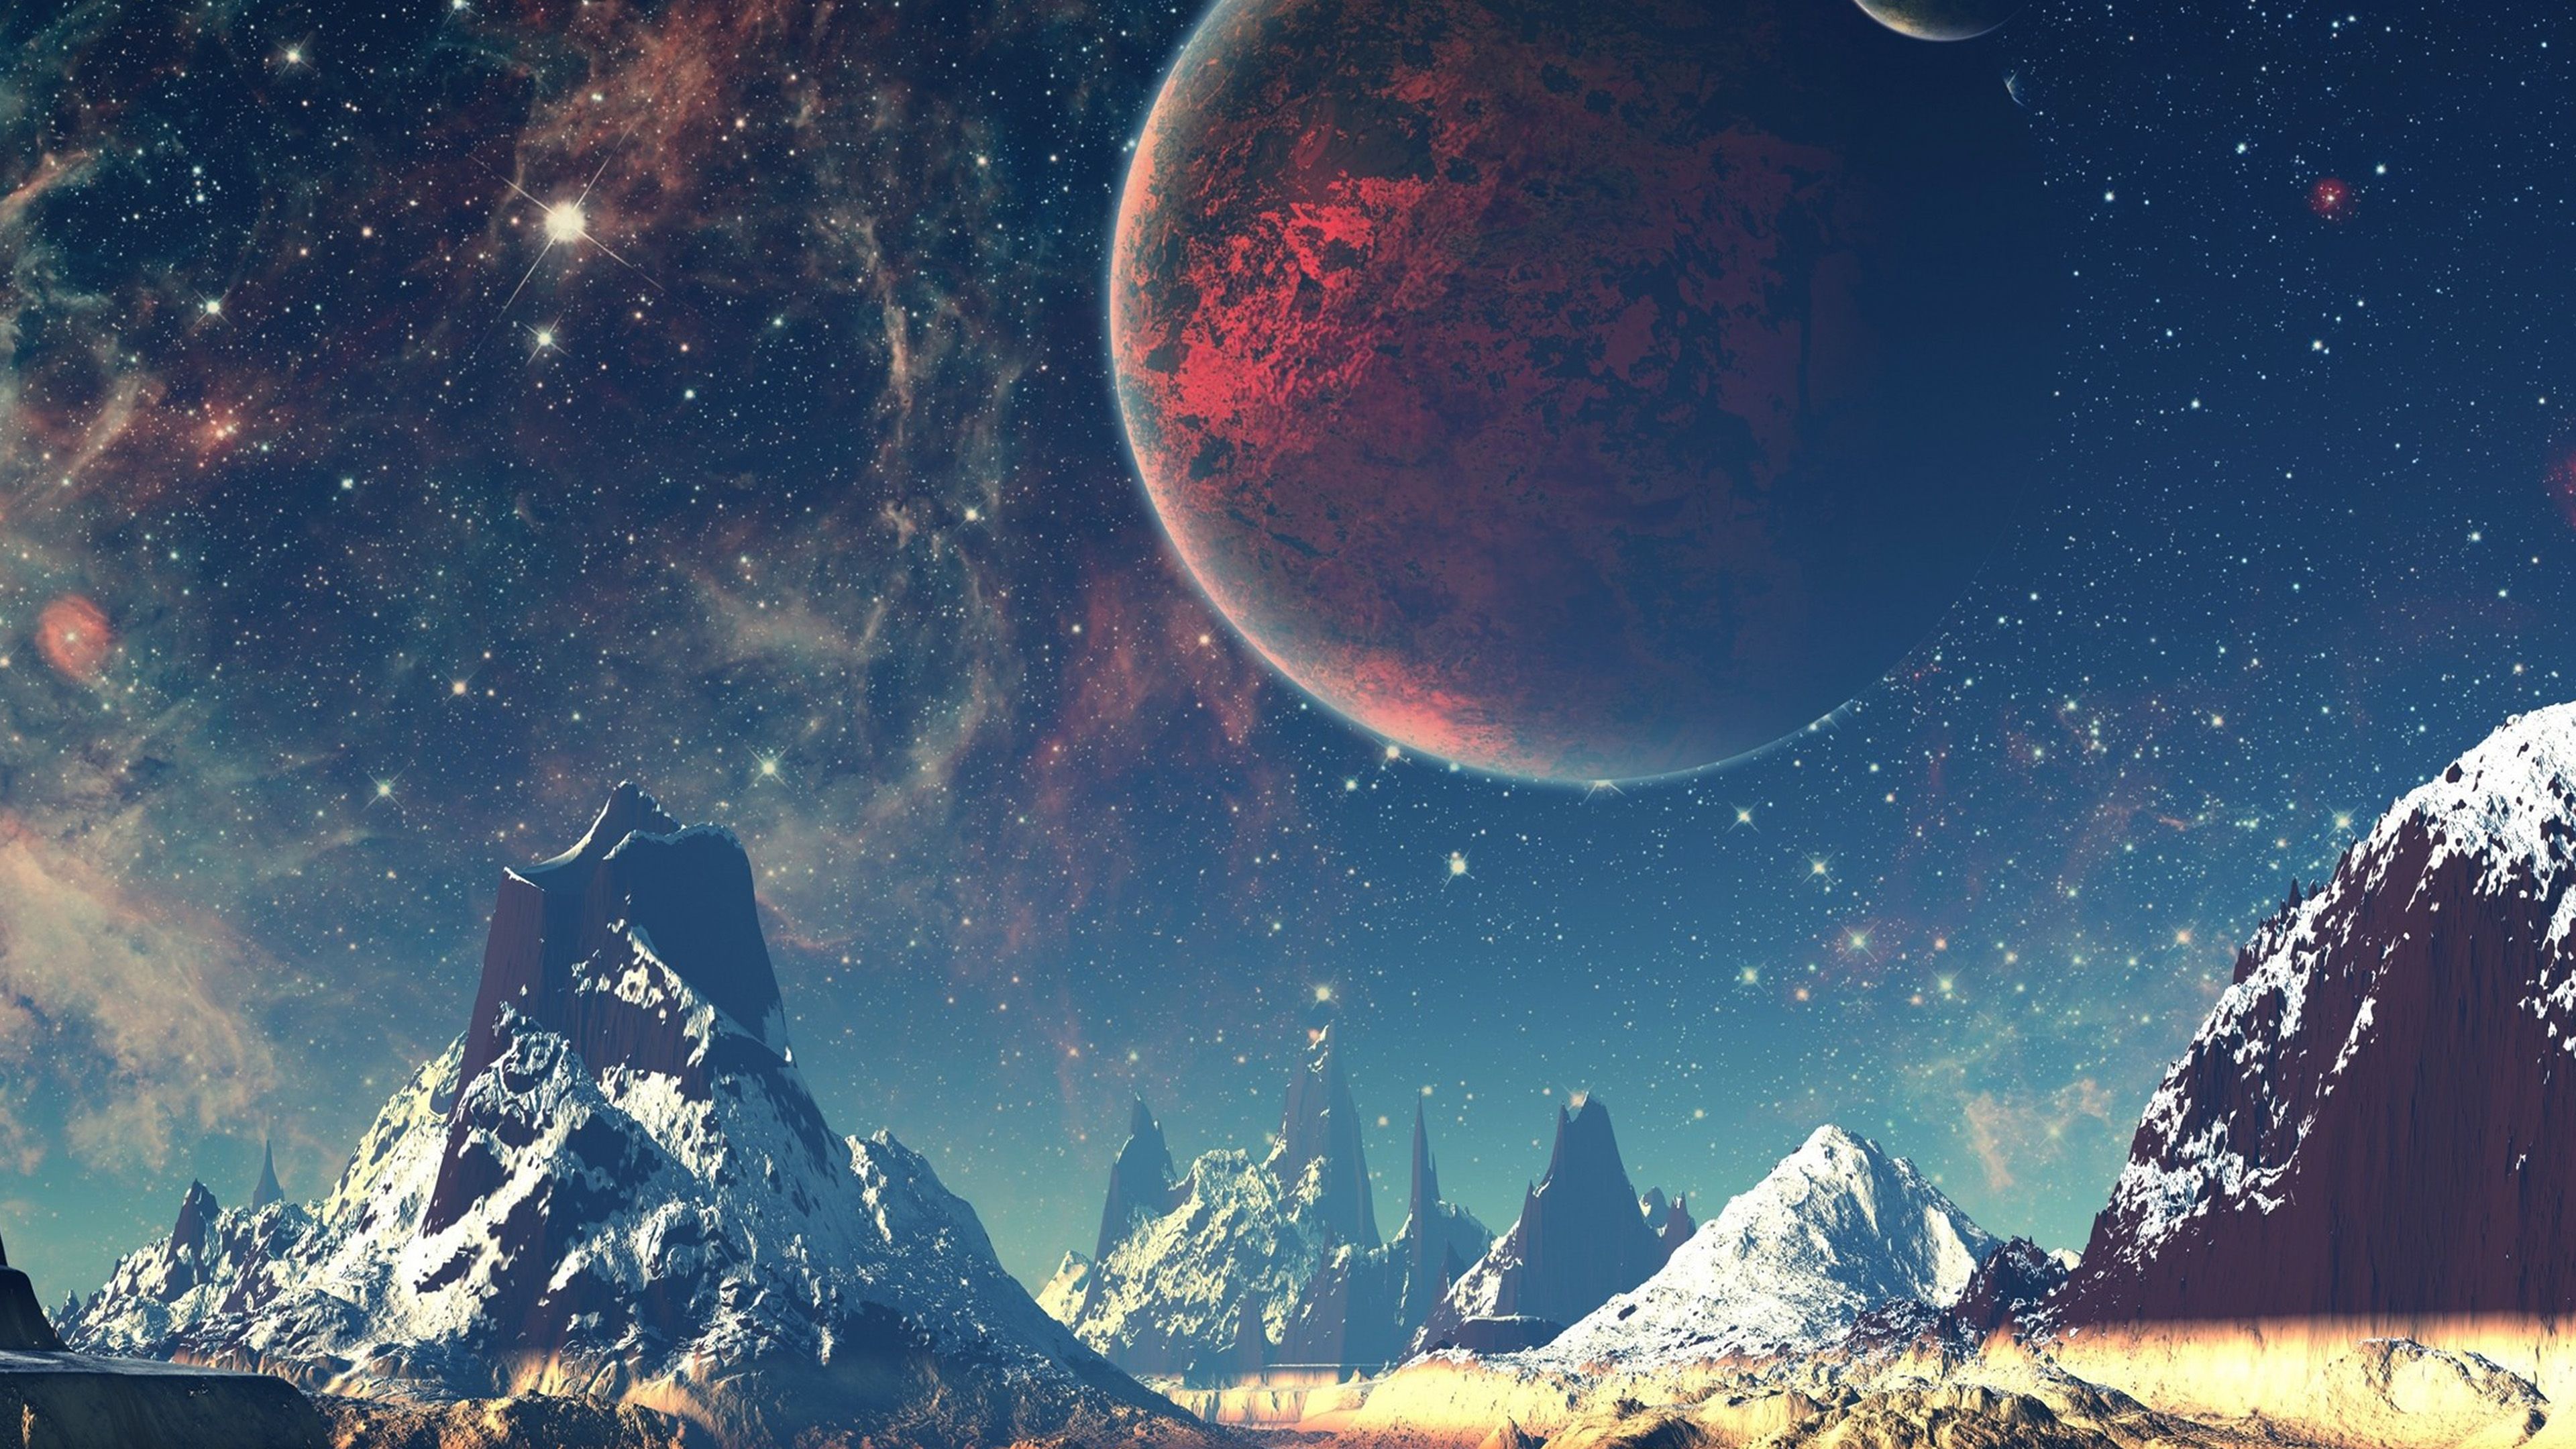 wallpaper for desktop, laptop. dream space world mountain sky star illustration